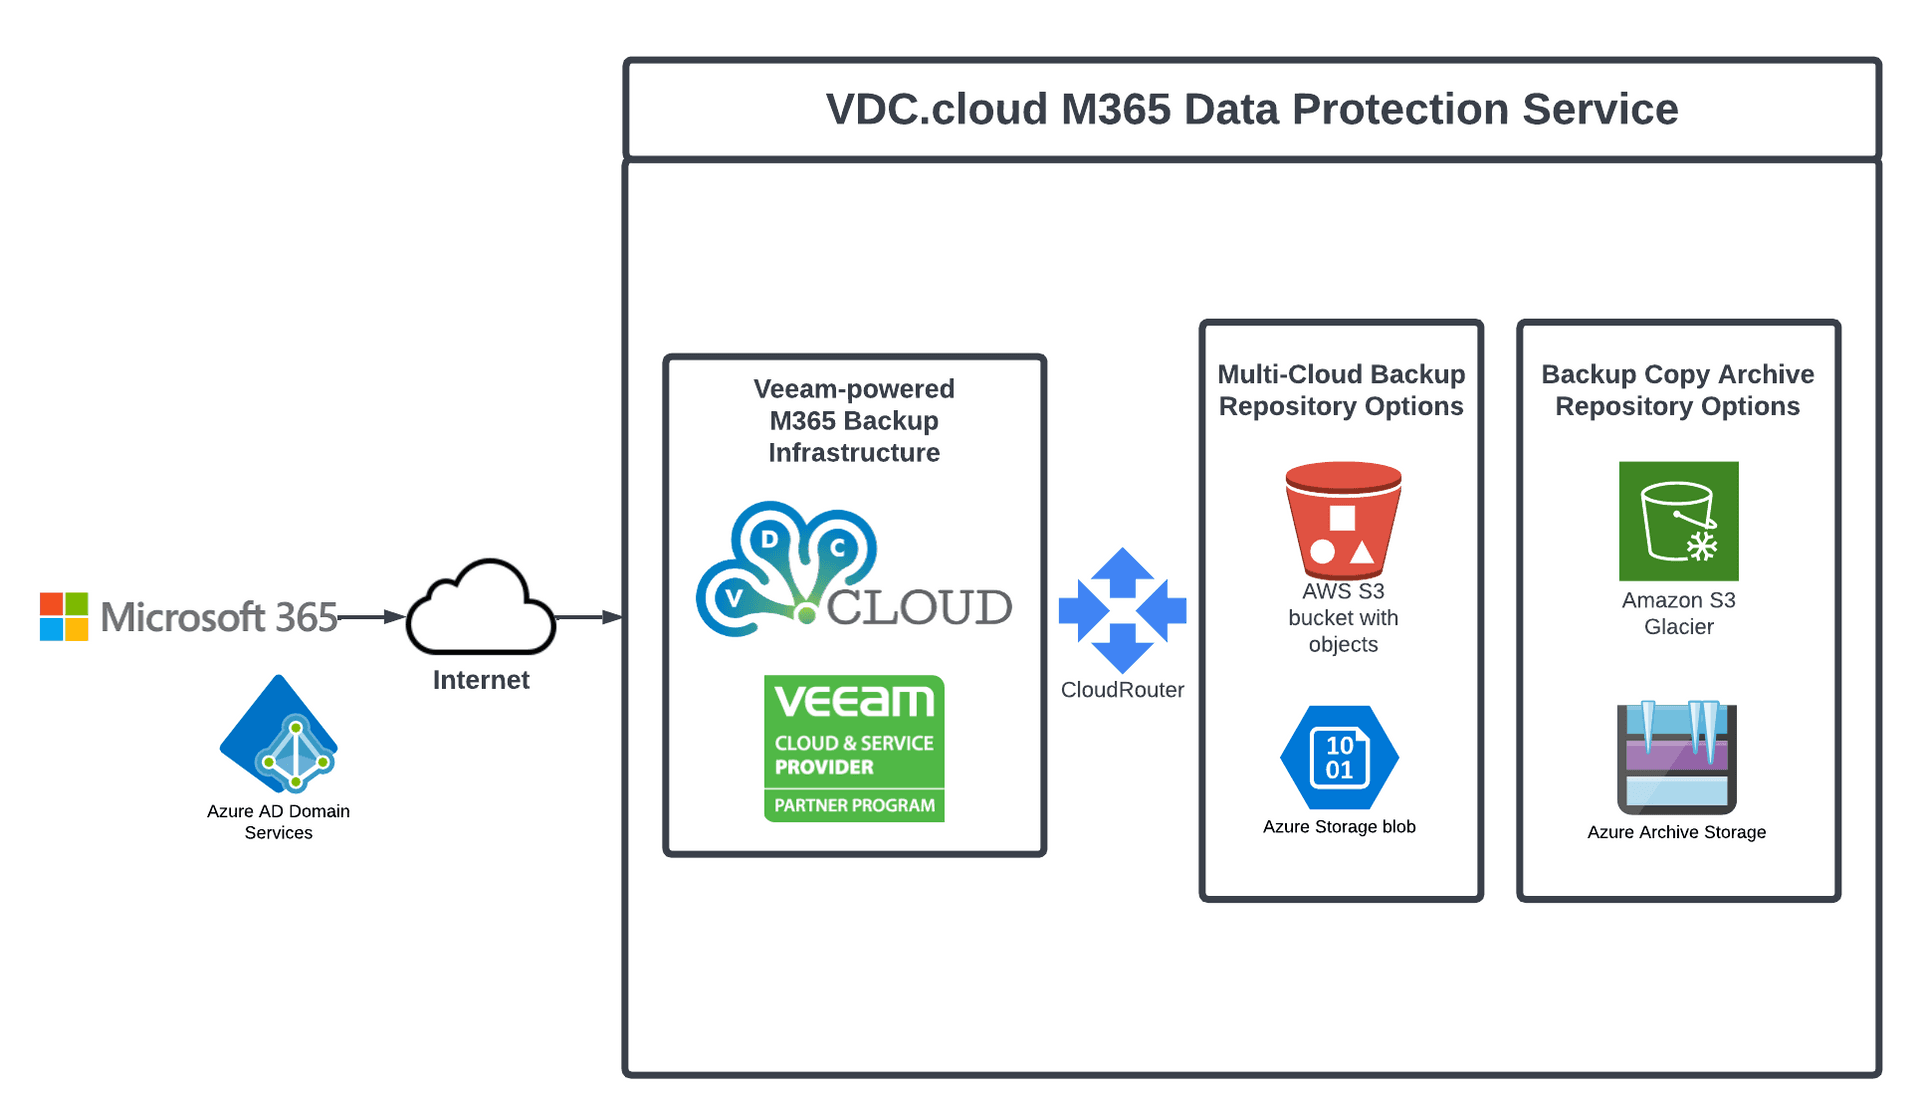 VDC.cloud M365 Service illustion